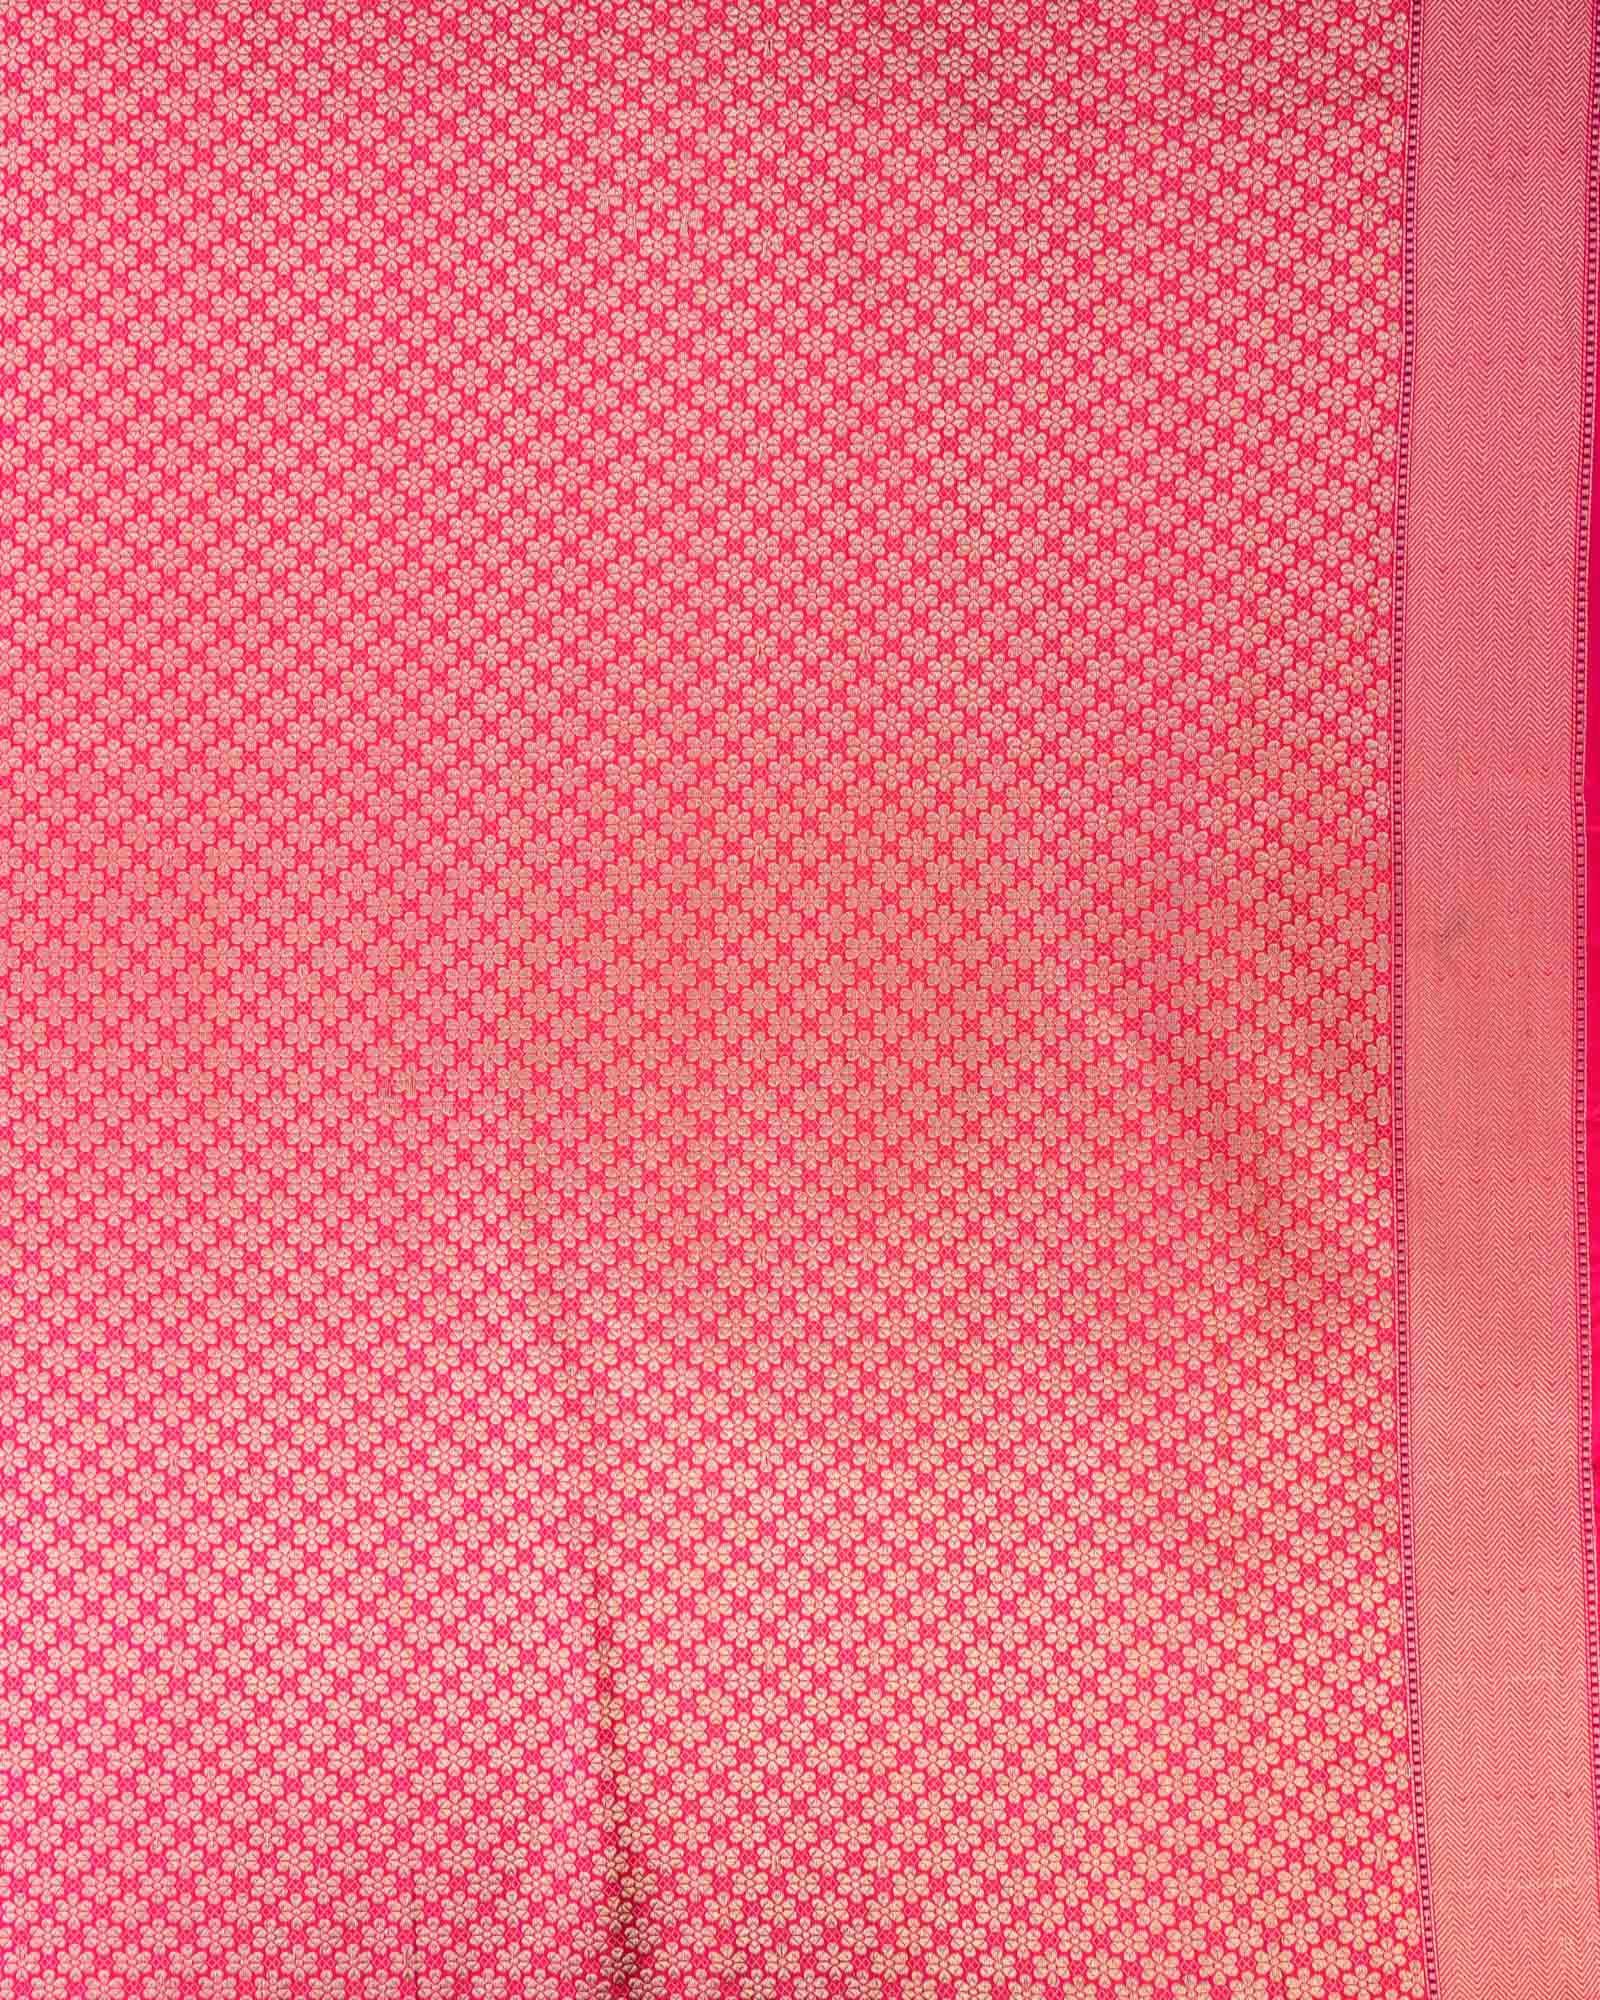 Black Banarasi Kadhuan Brocade Handwoven Katan Silk Saree with Pink Kadiyal Border Pallu - By HolyWeaves, Benares